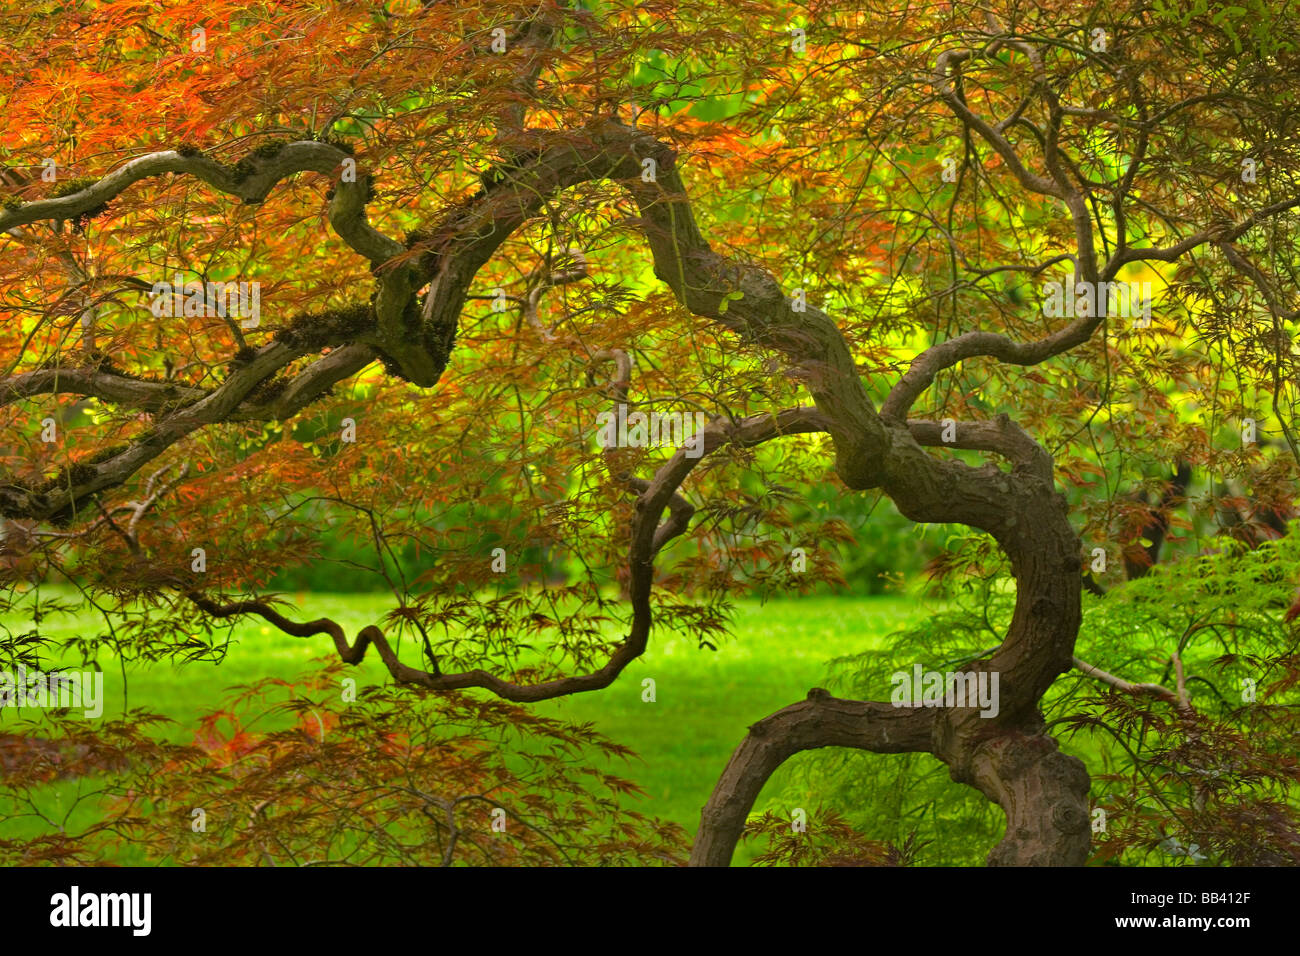 USA, Oregon, Salem. Dramatisch verdrehte japanischer Ahornbaum im Bush House Garten. Stockfoto